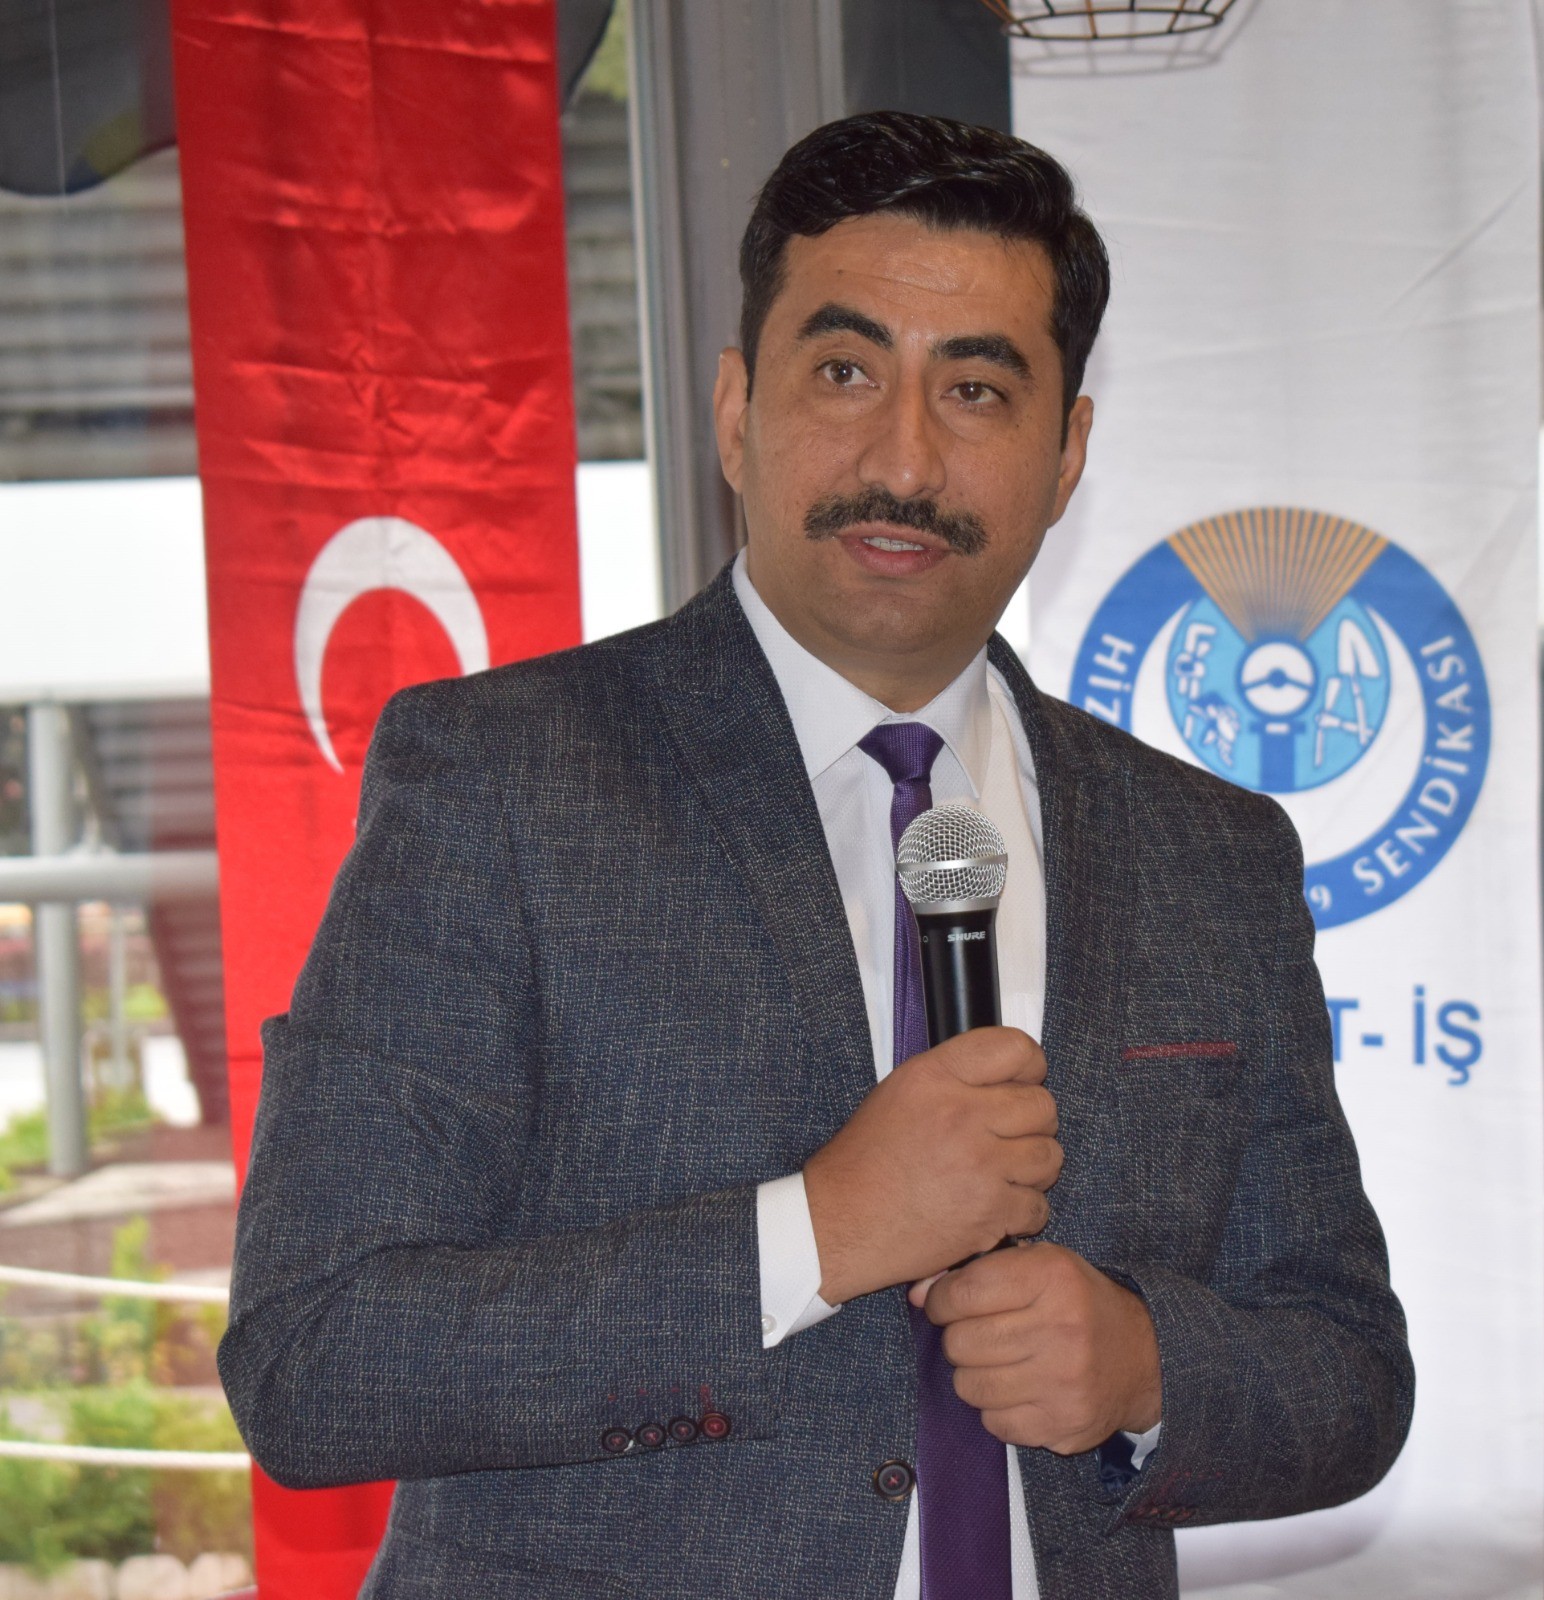 Hak-İş’in ‘Biz Bize Yeteriz Türkiye’m kampanyasına desteği 3 milyona ulaştı